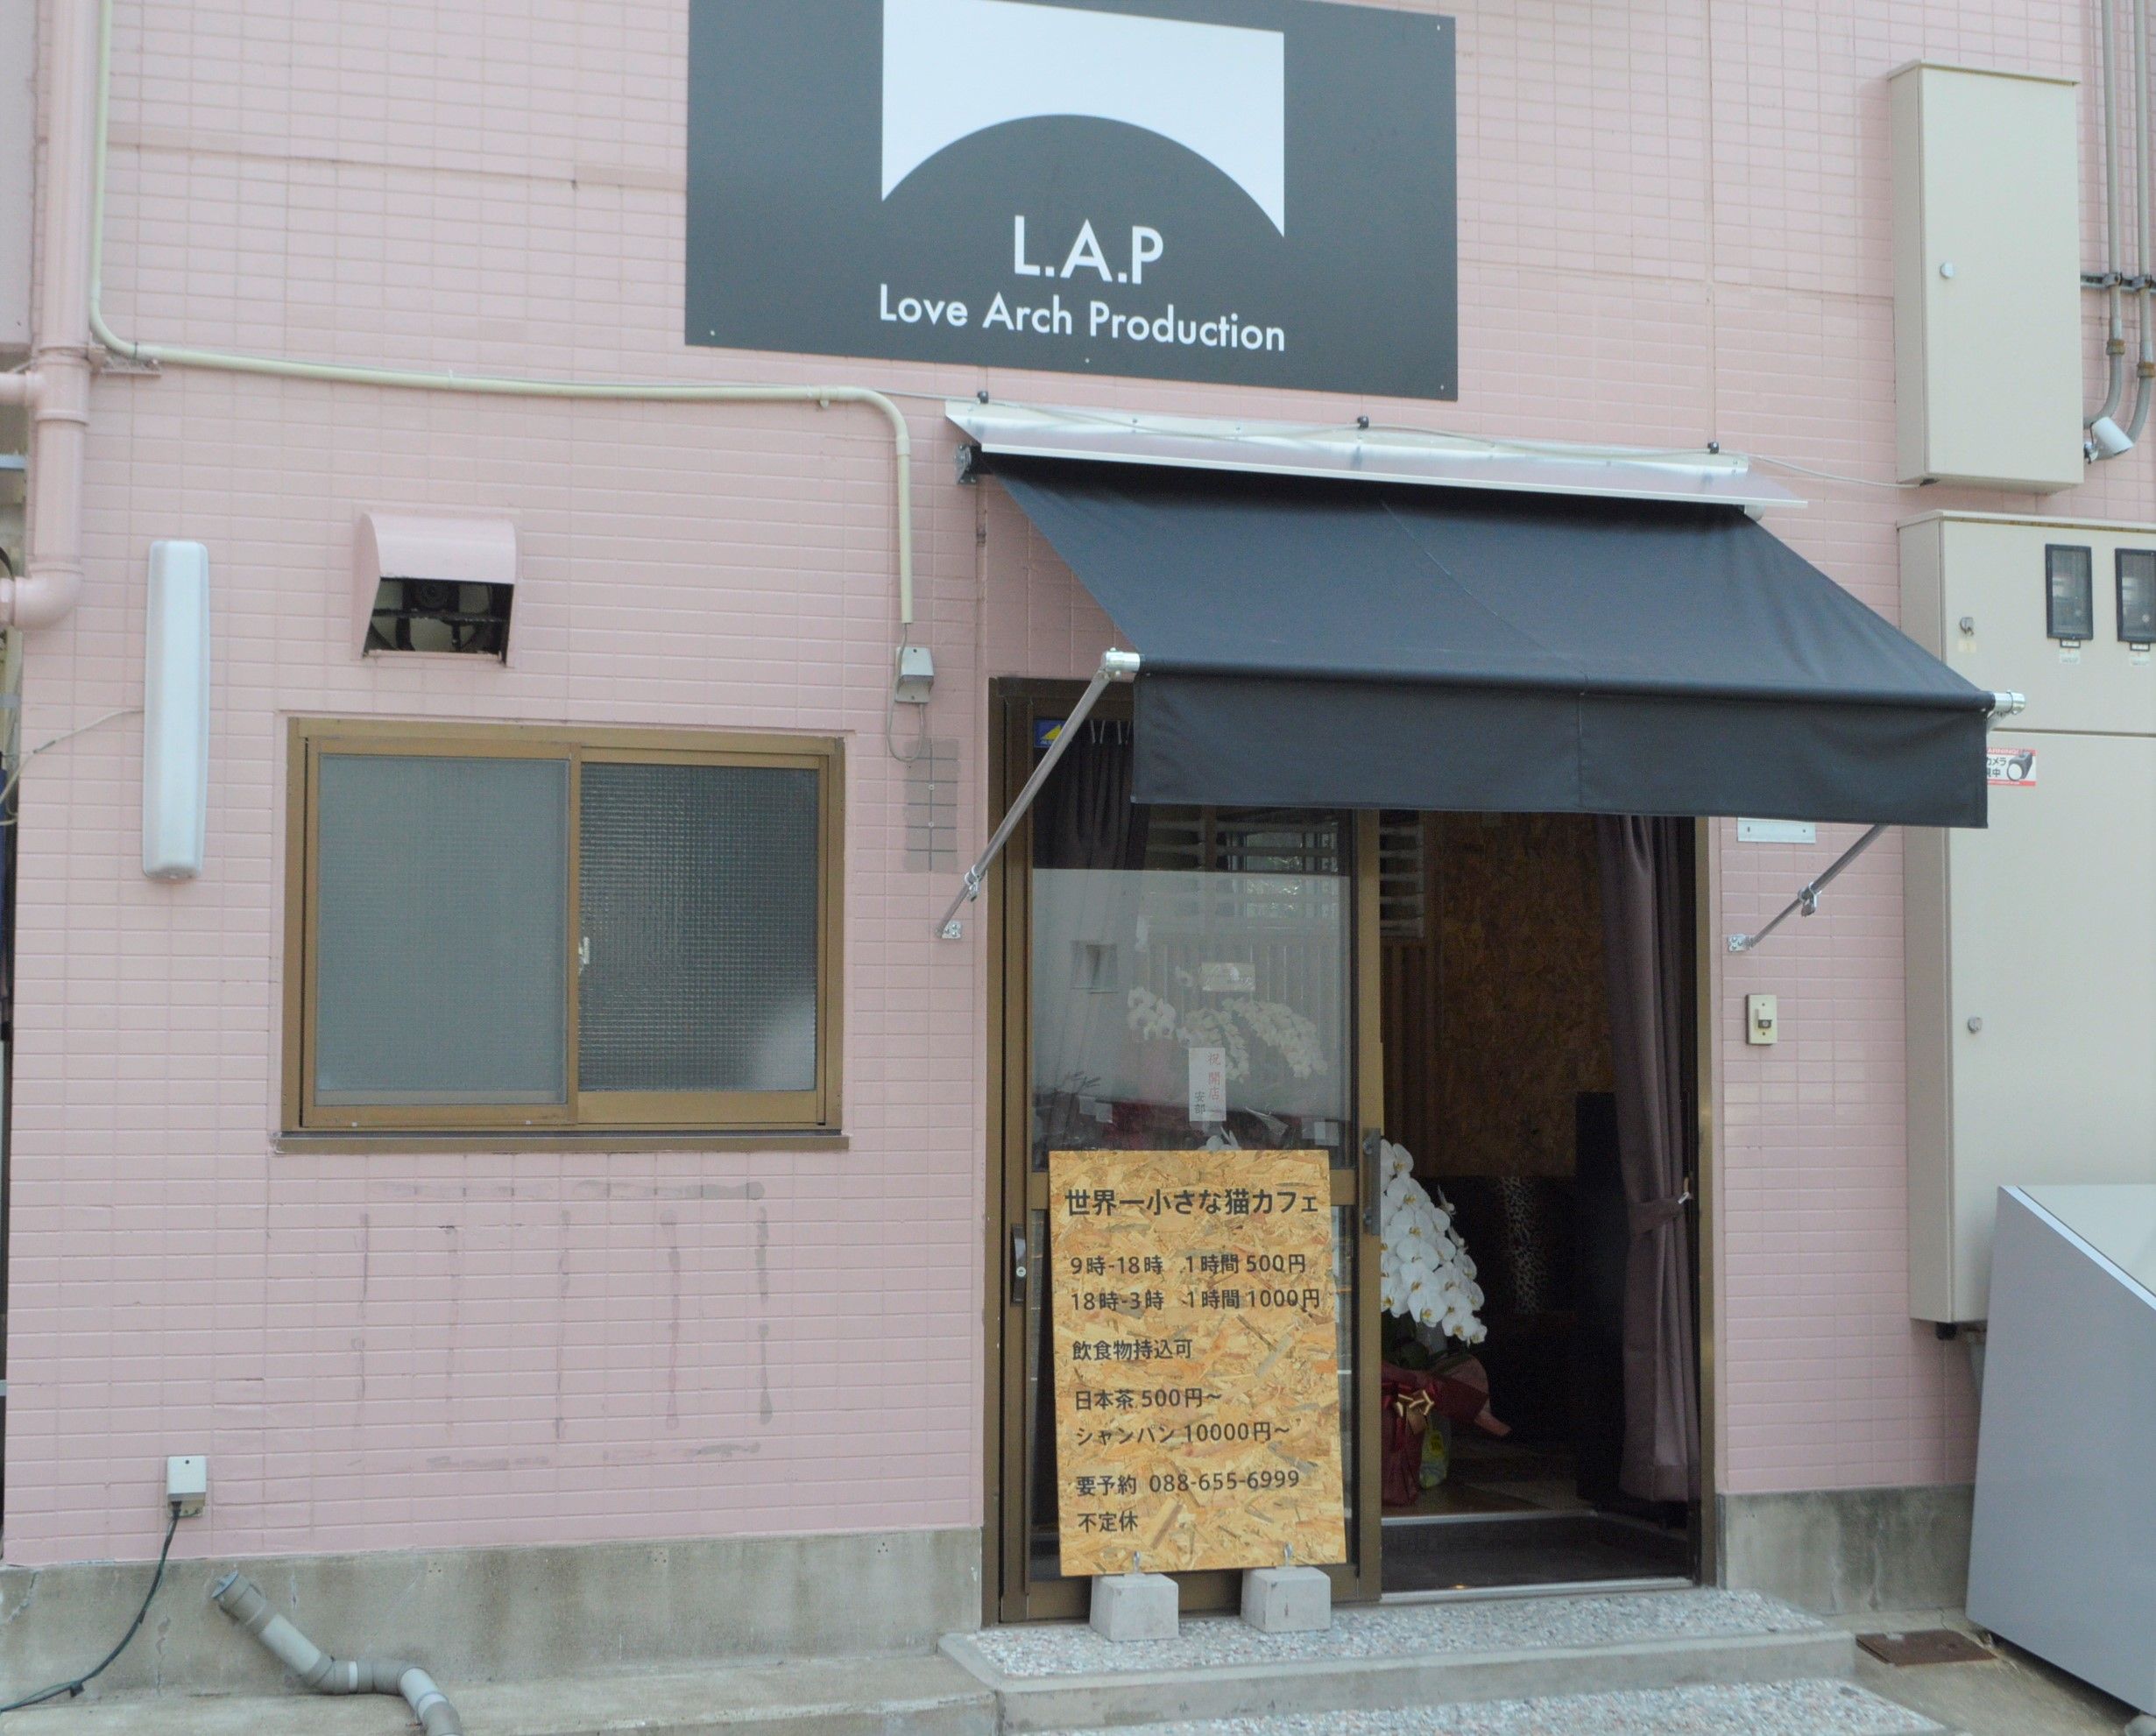 新店情報 徳島市に７月１日 猫カフェオープン 経済 徳島の話題 徳島ニュース 徳島新聞電子版